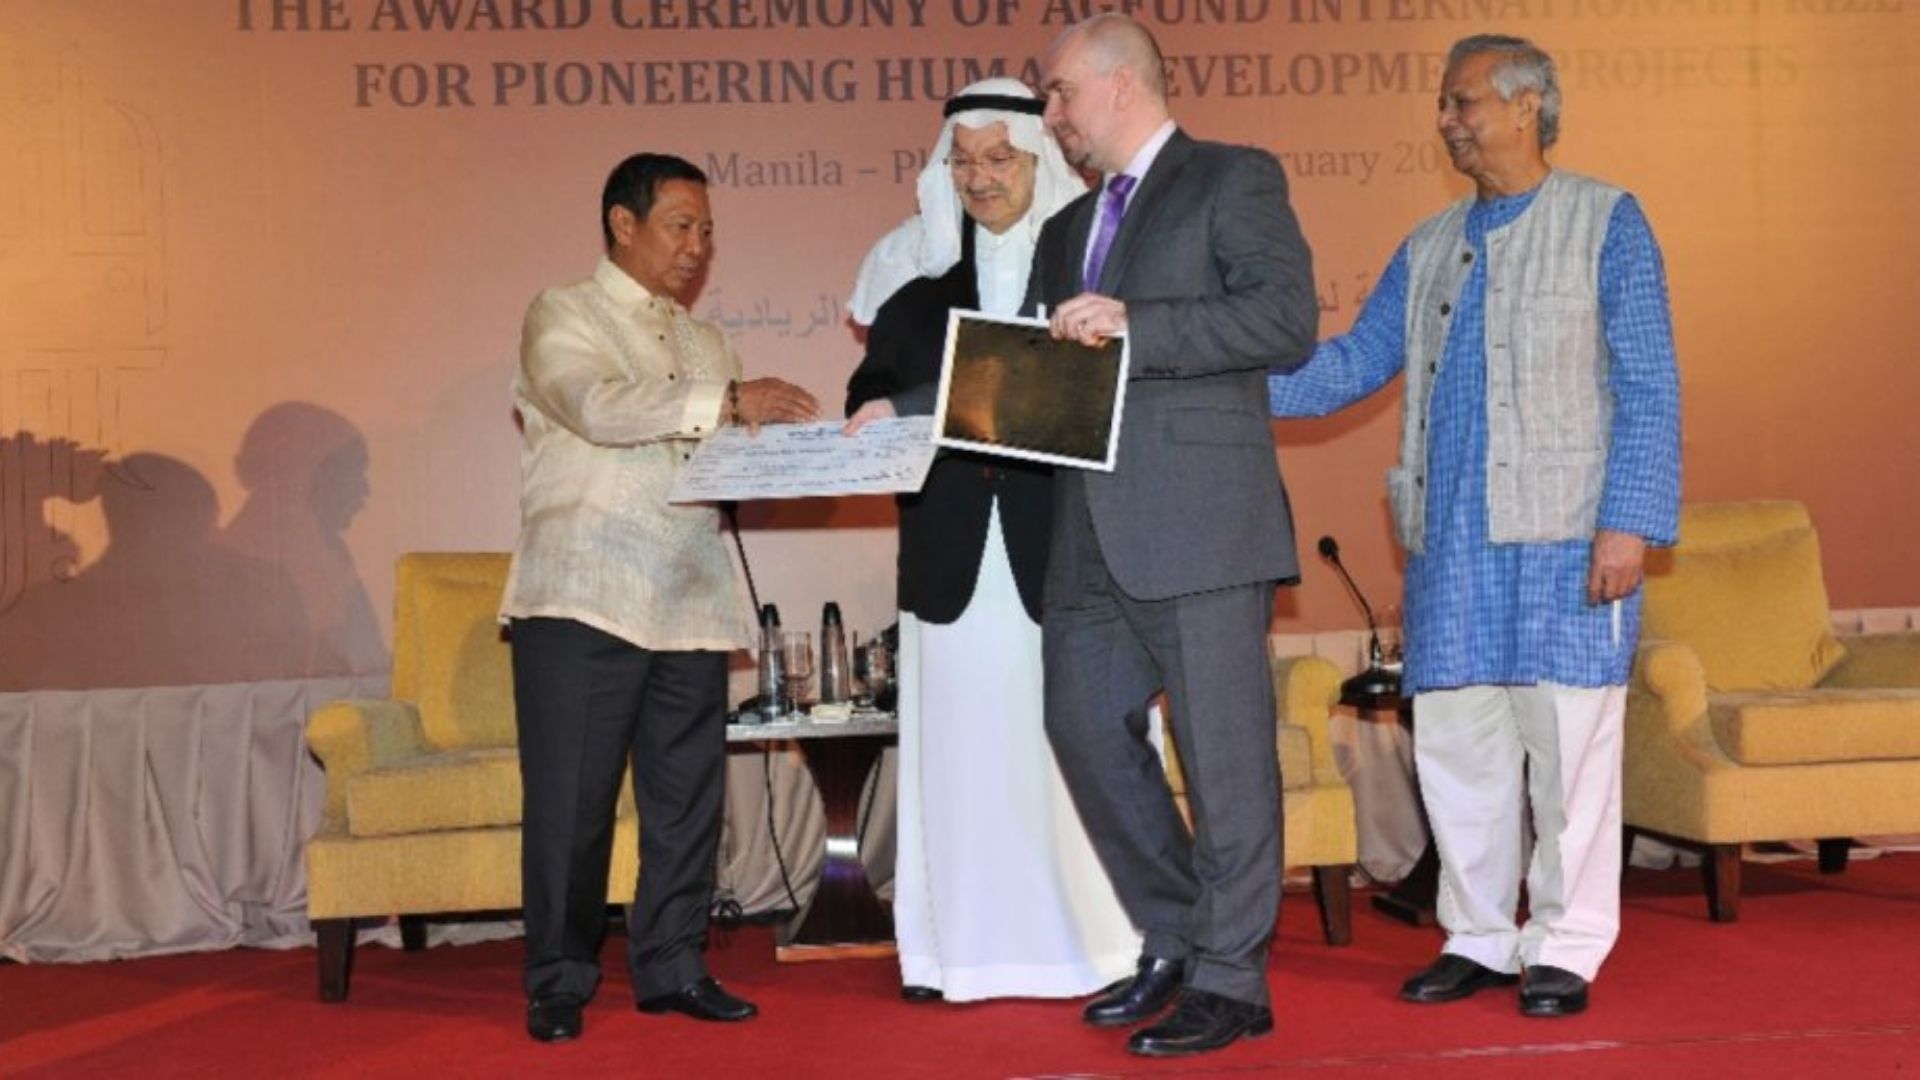 جائزة الأمير طلال الدولية للتنمية البشرية 2011